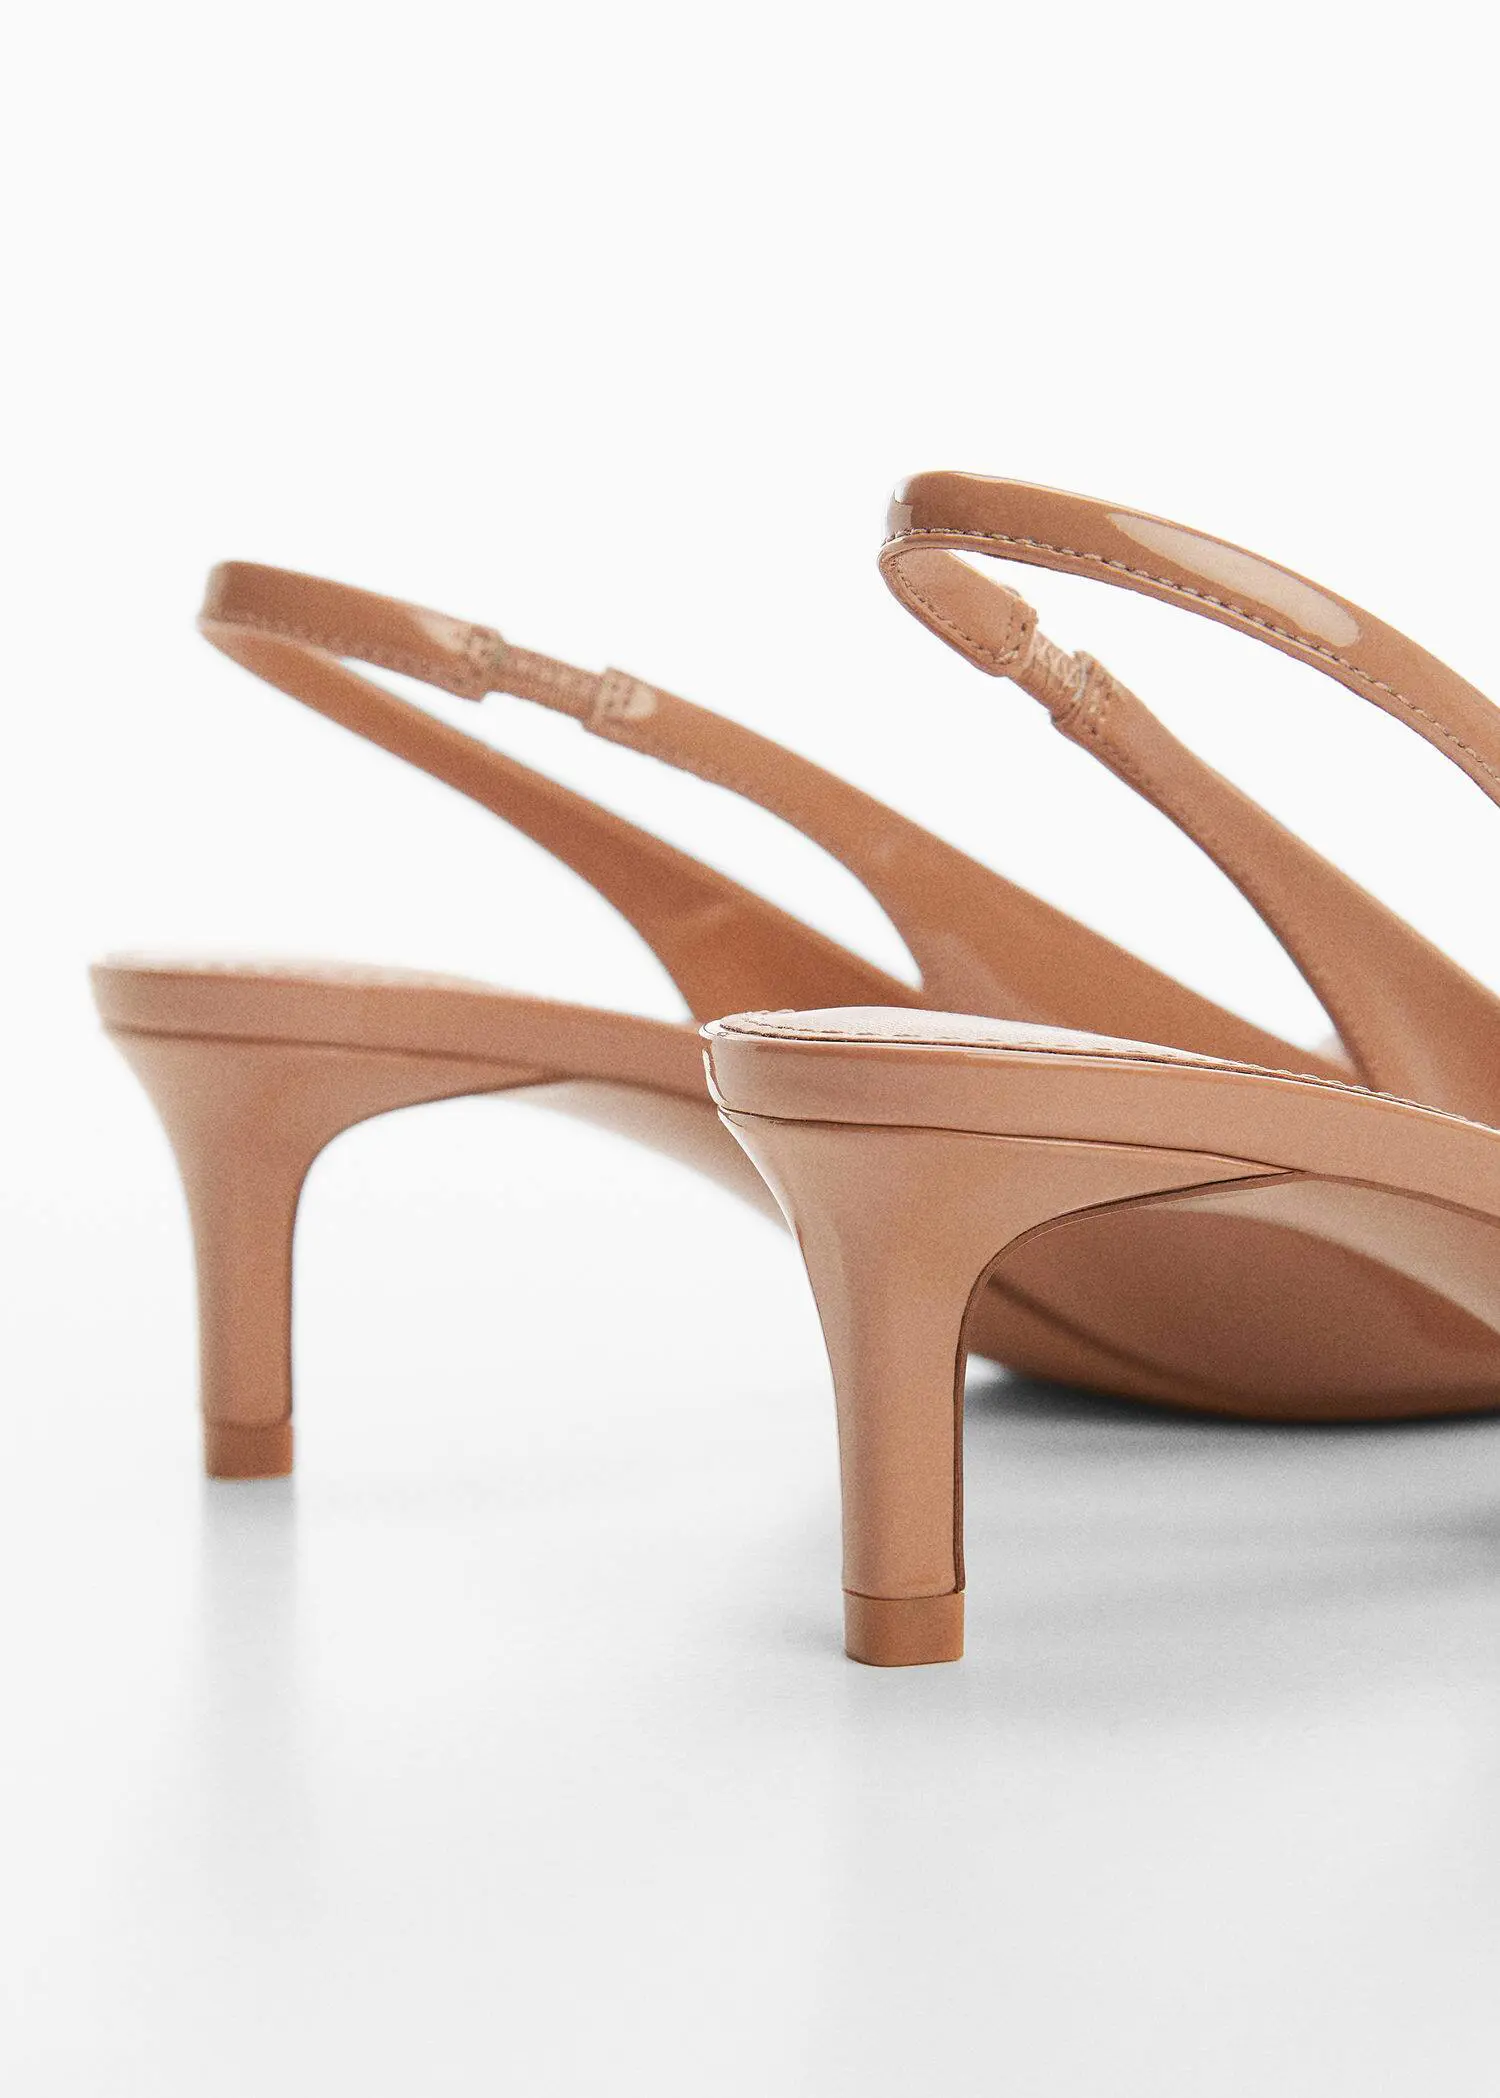 Mango Patent leather slingback-heeled shoes. 3